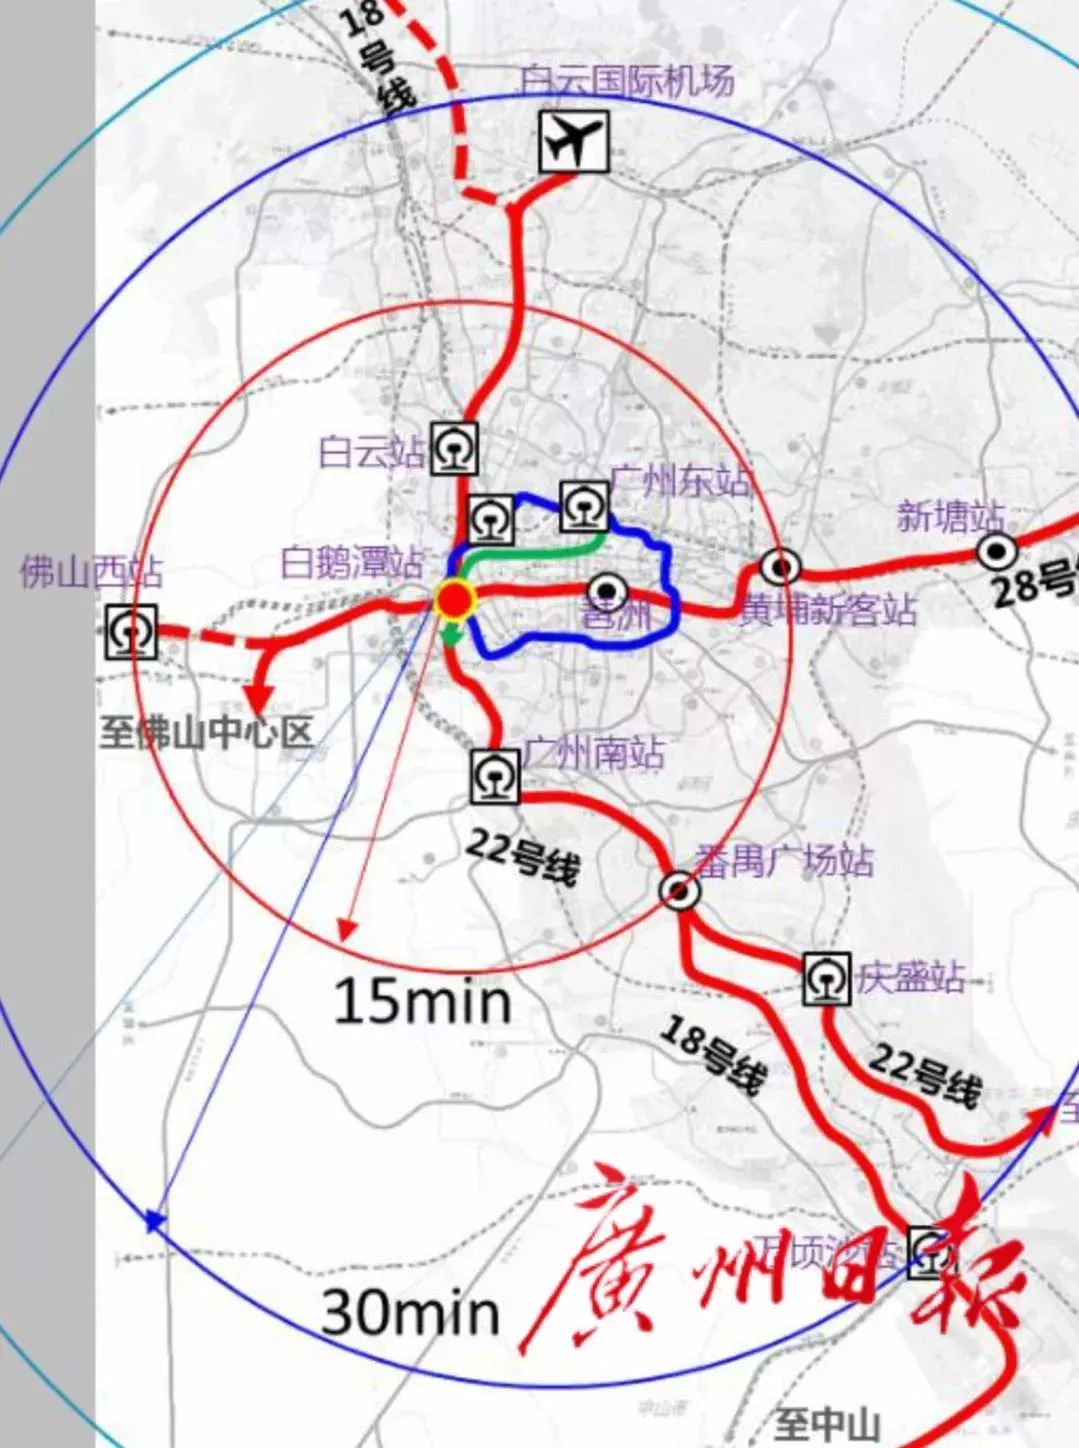 会替换原来的芳村站 成为4线换乘站点 广州地铁28号线作为东西快线